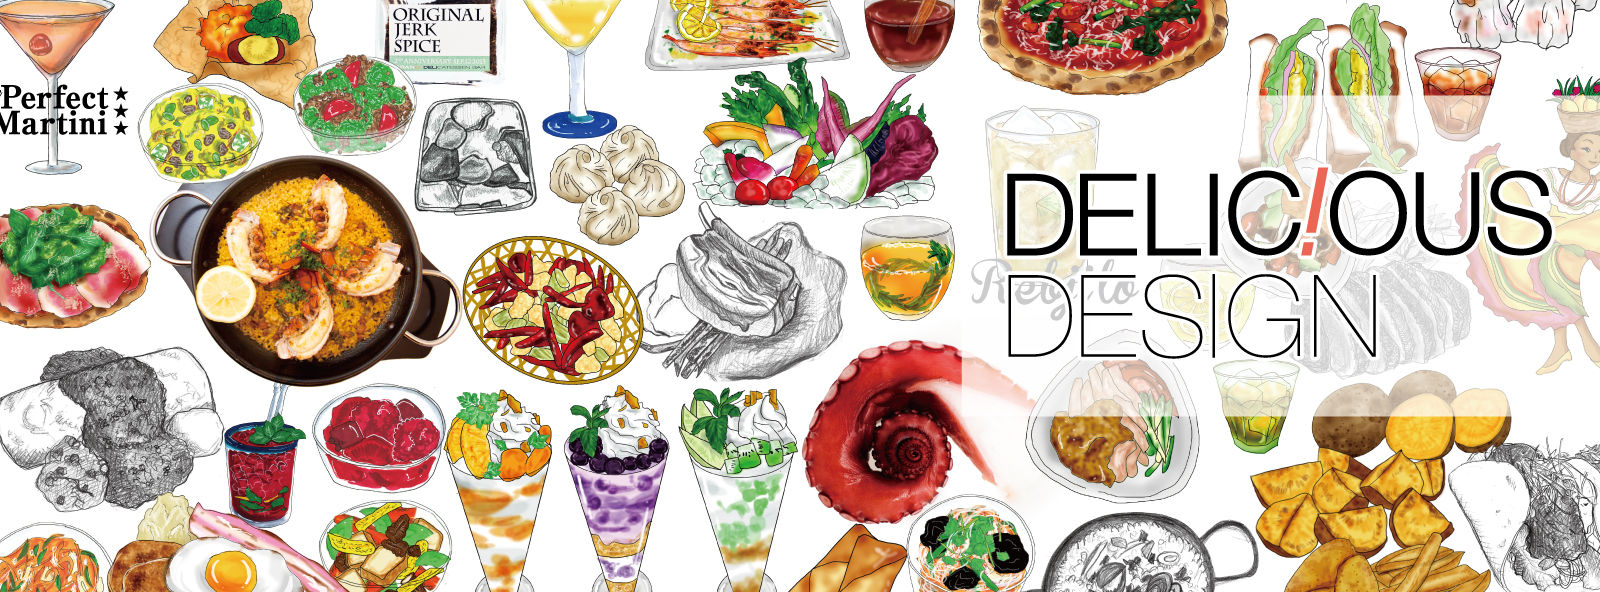 メニューデザイン 料理イラスト デリシャスデザイン制作事例pdfファイルがダウンロードできます Delicious Life